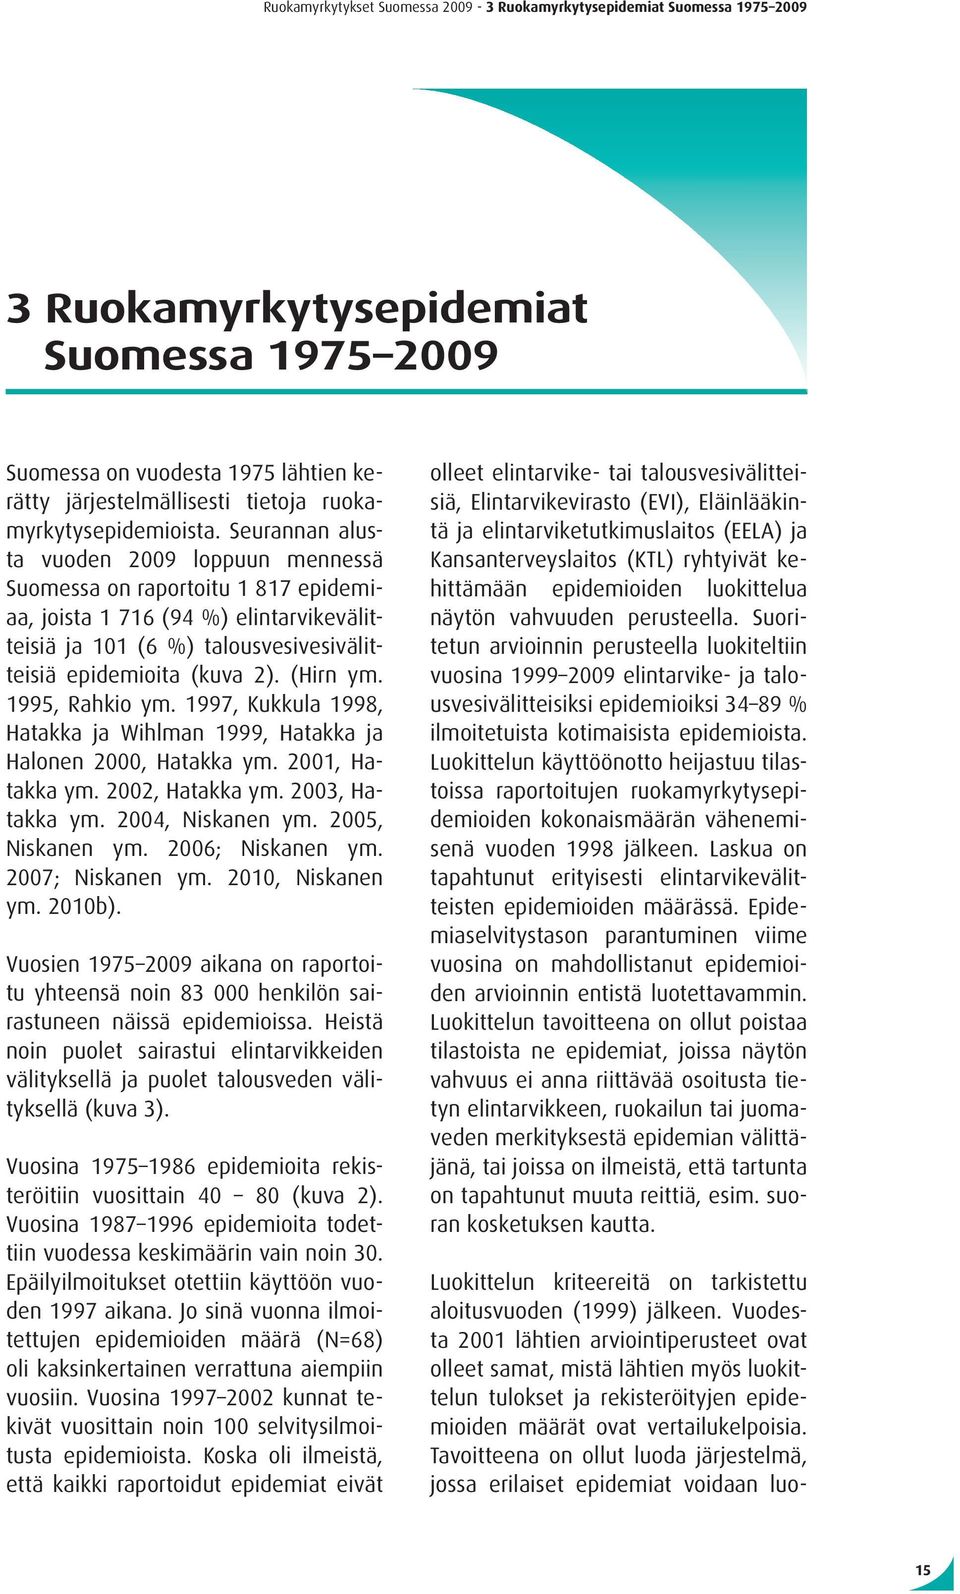 Seurannan alusta vuoden 2009 loppuun mennessä Suomessa on raportoitu 1 817 epidemiaa, joista 1 716 (94 %) elintarvikevälitteisiä ja 101 (6 %) talousvesivesivälitteisiä epidemioita (kuva 2). (Hirn ym.